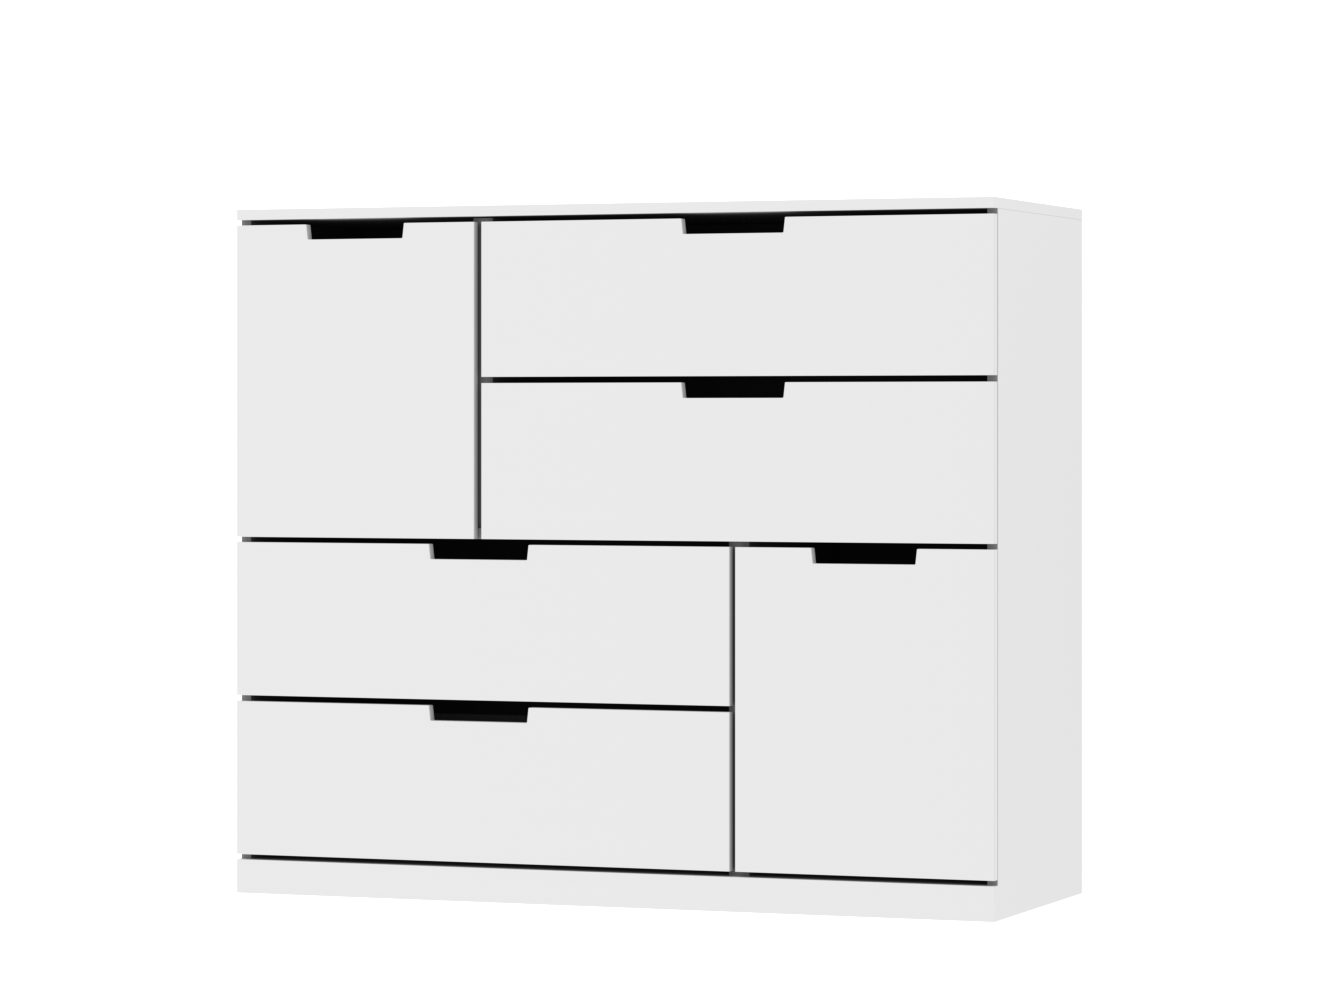  Комод Нордли 34 white ИКЕА (IKEA) изображение товара